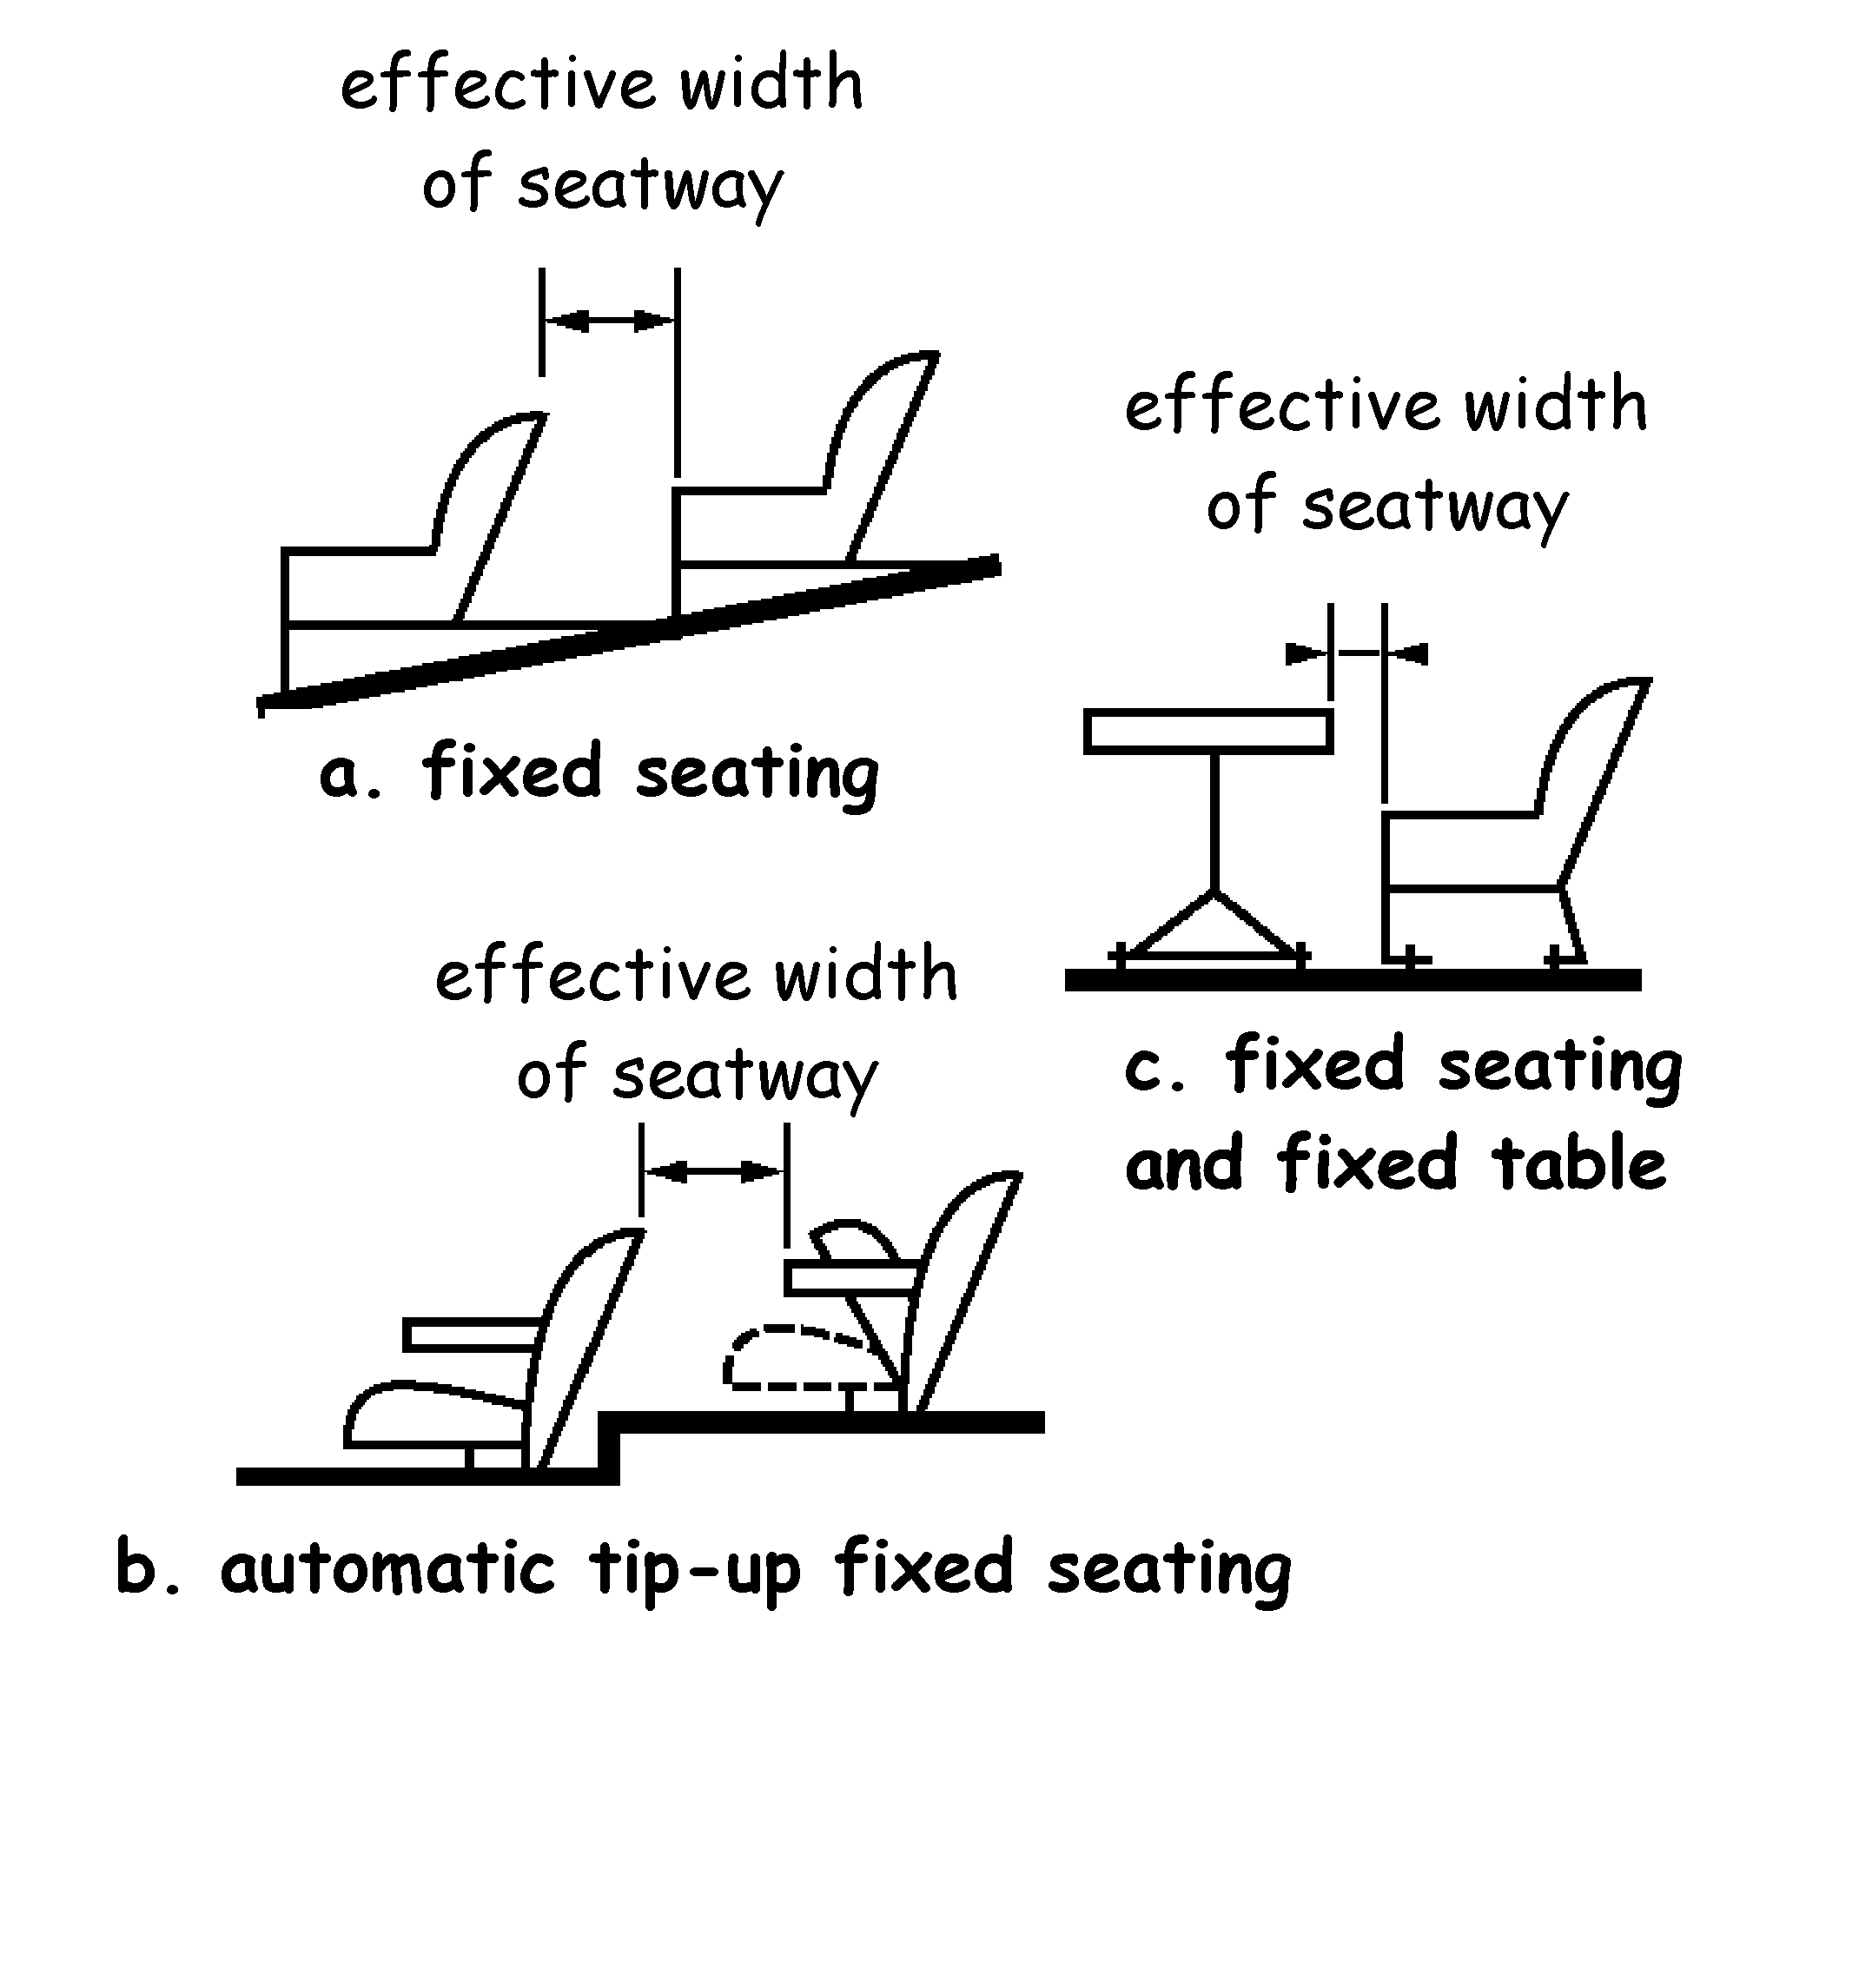 Method of measuring seatway widths